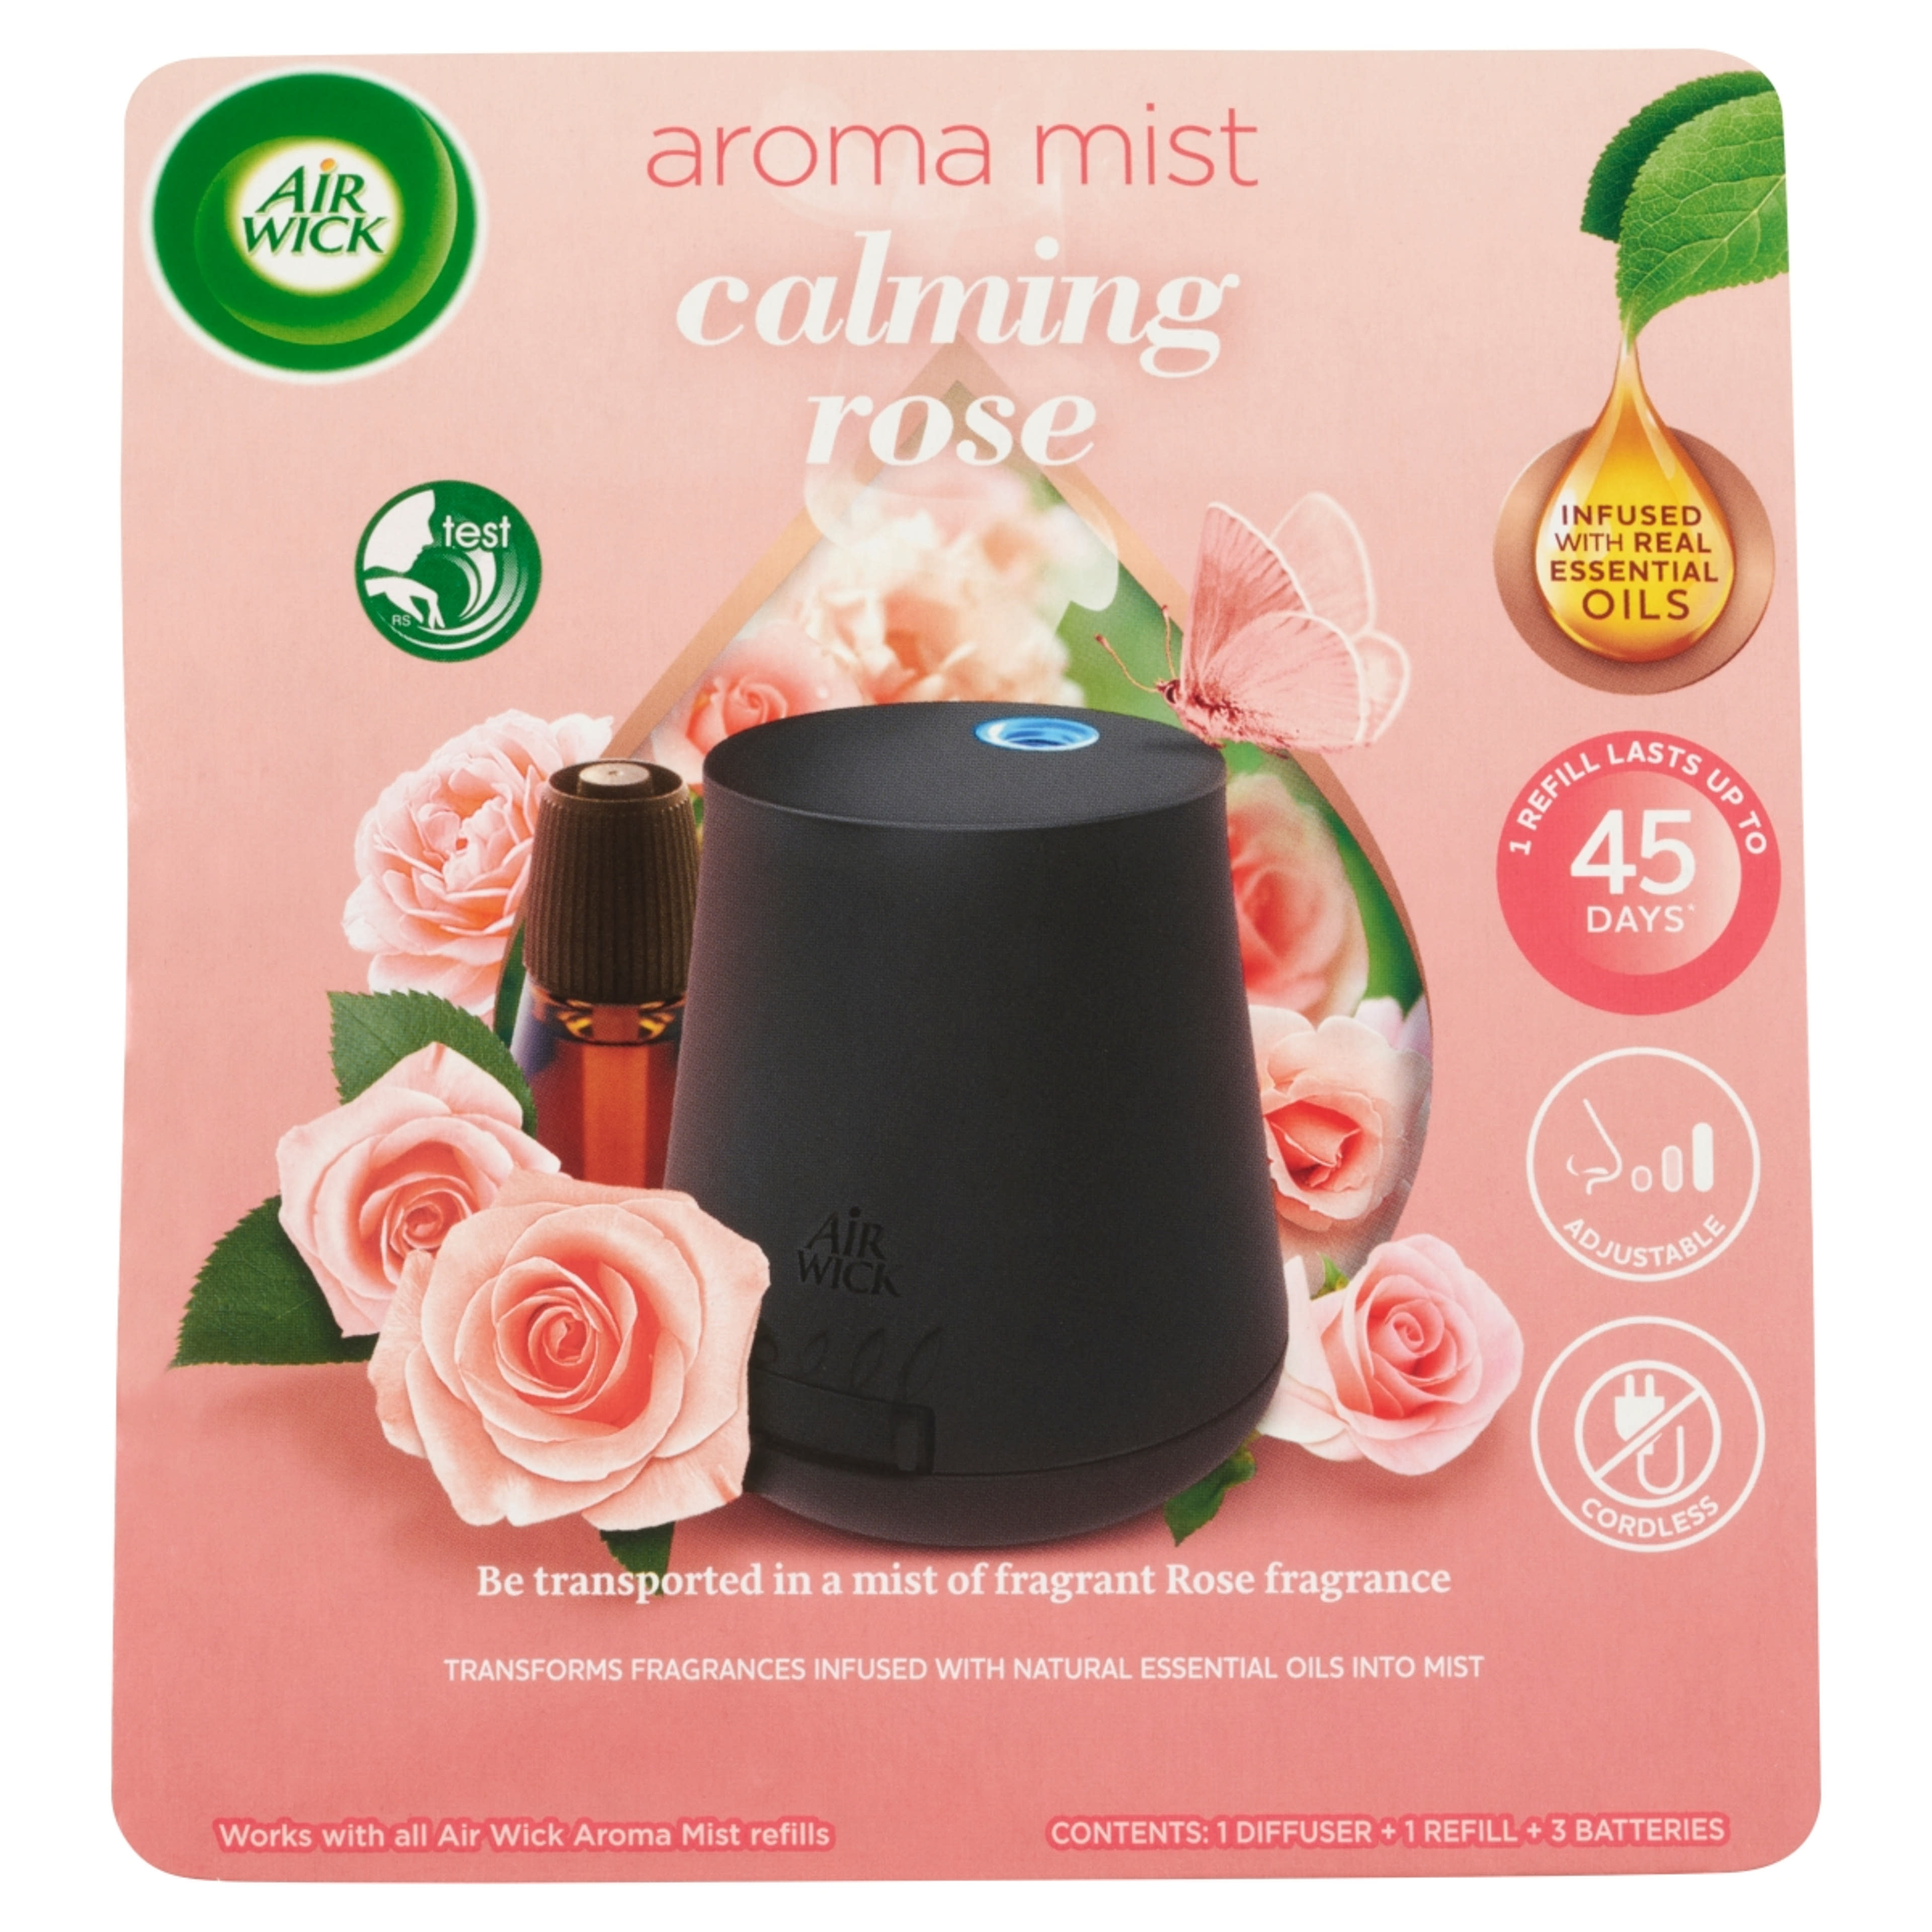 Air Wick Aroma Mist Nyugtató rózsa illat aroma diffúzor készülék és utántöltő - 20 ml